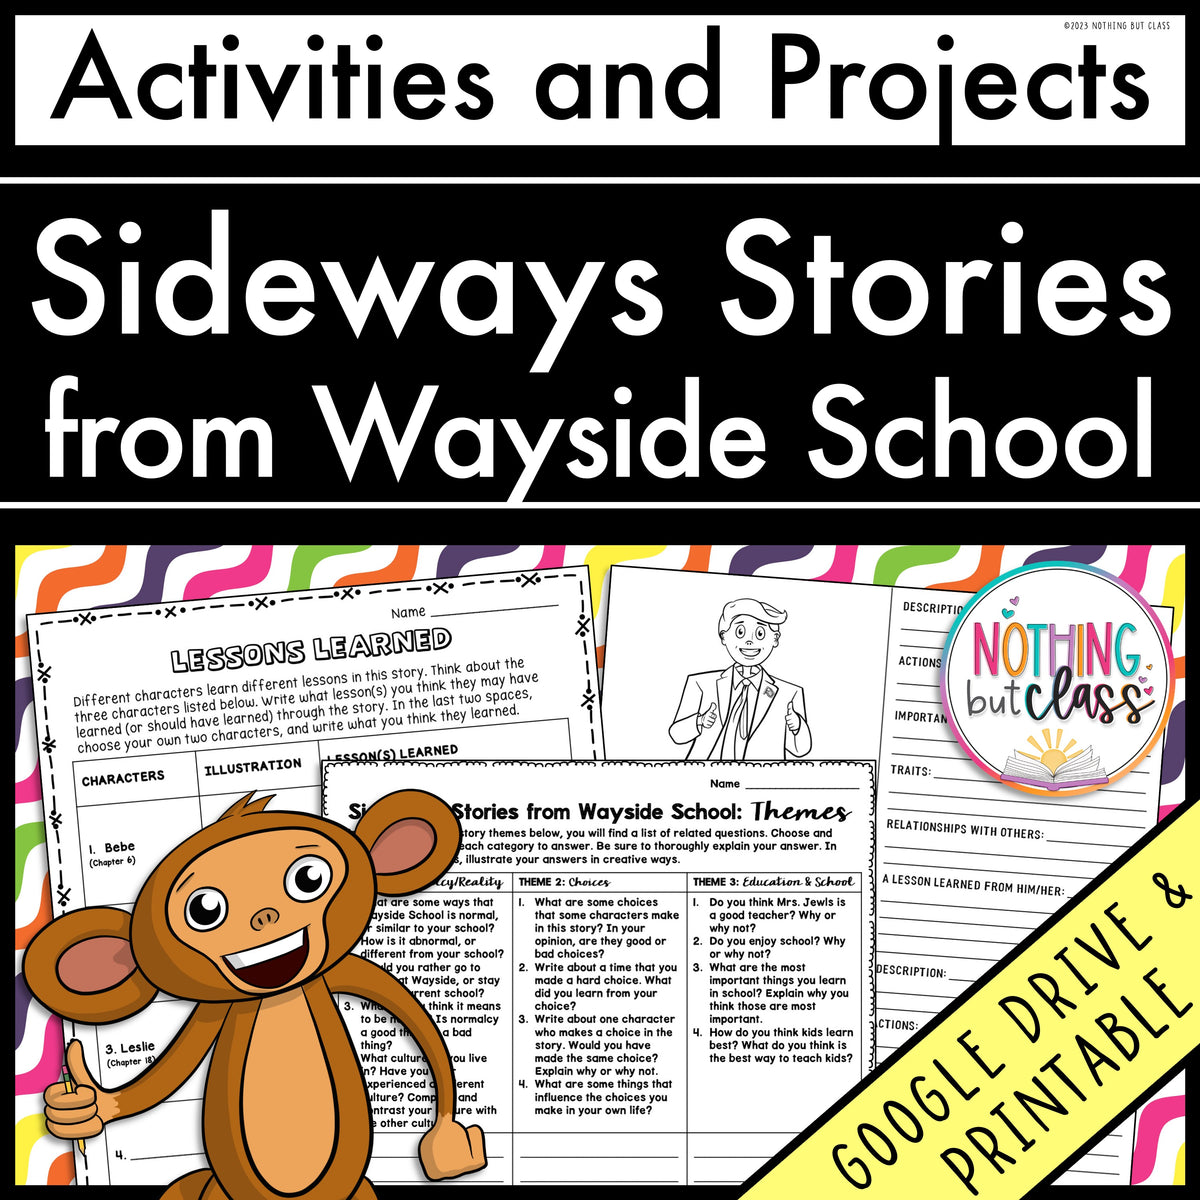 Sideways Stories From Wayside School & Wayside School is 